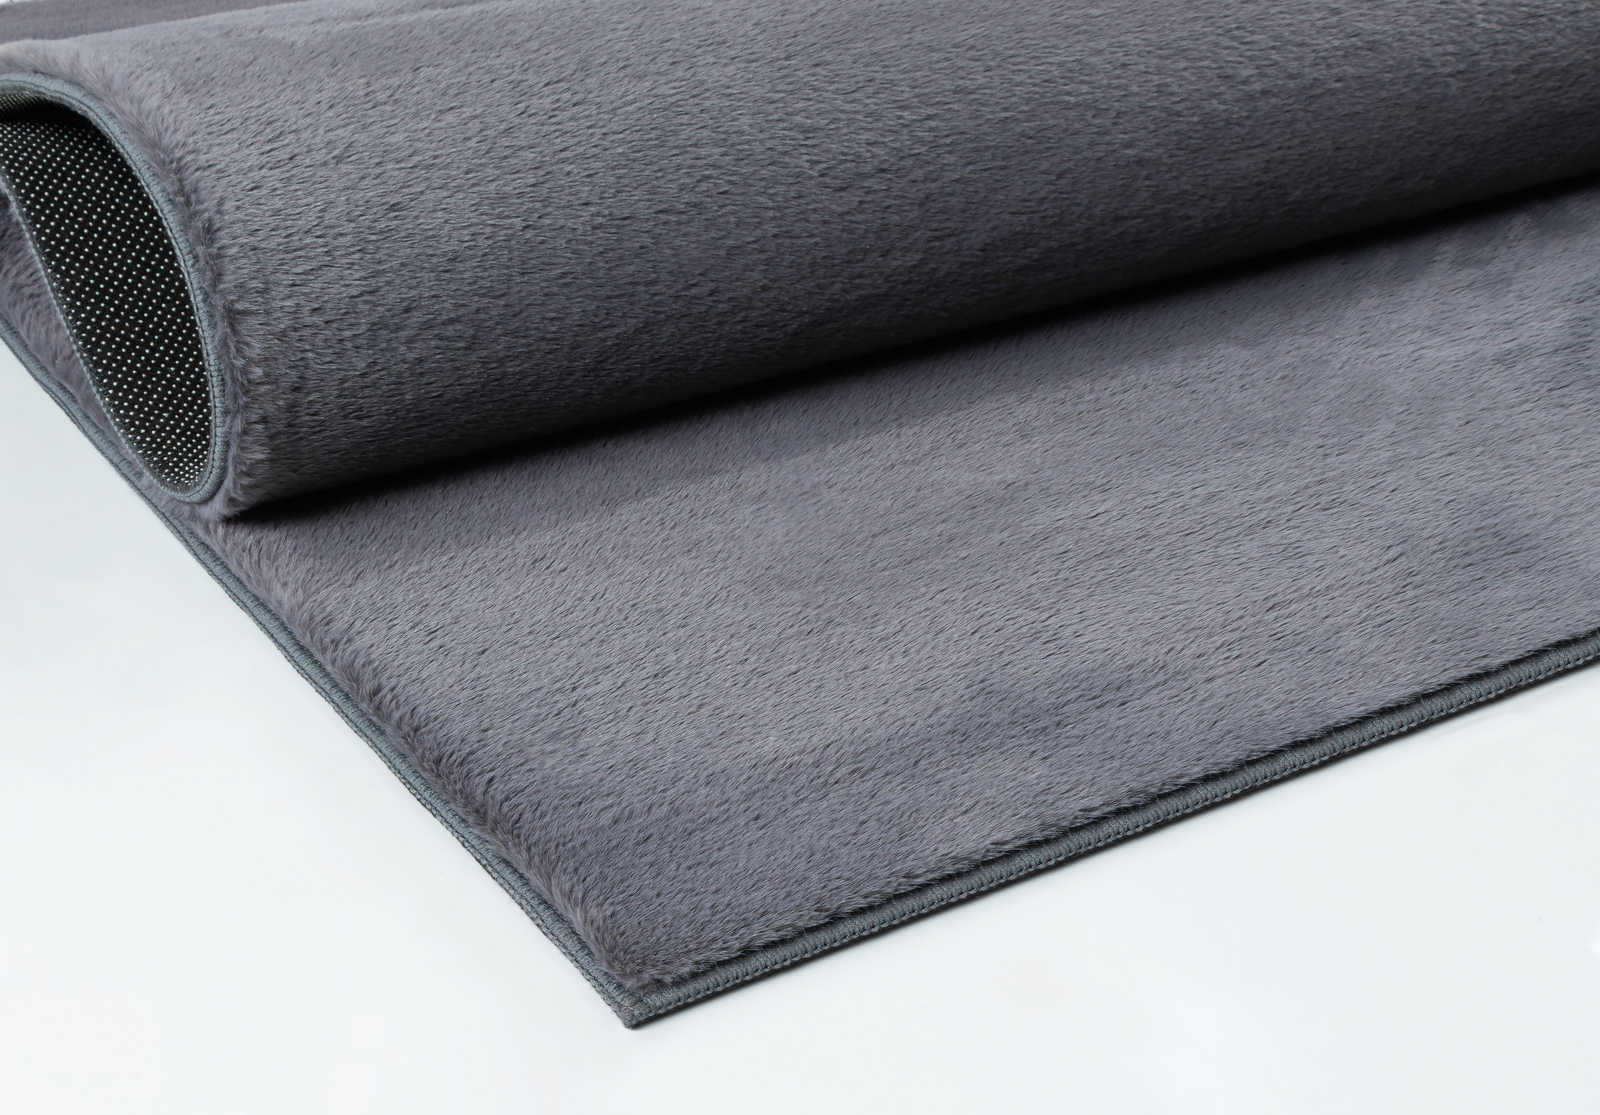             Soft pile carpet in anthracite - 100 x 50 cm
        